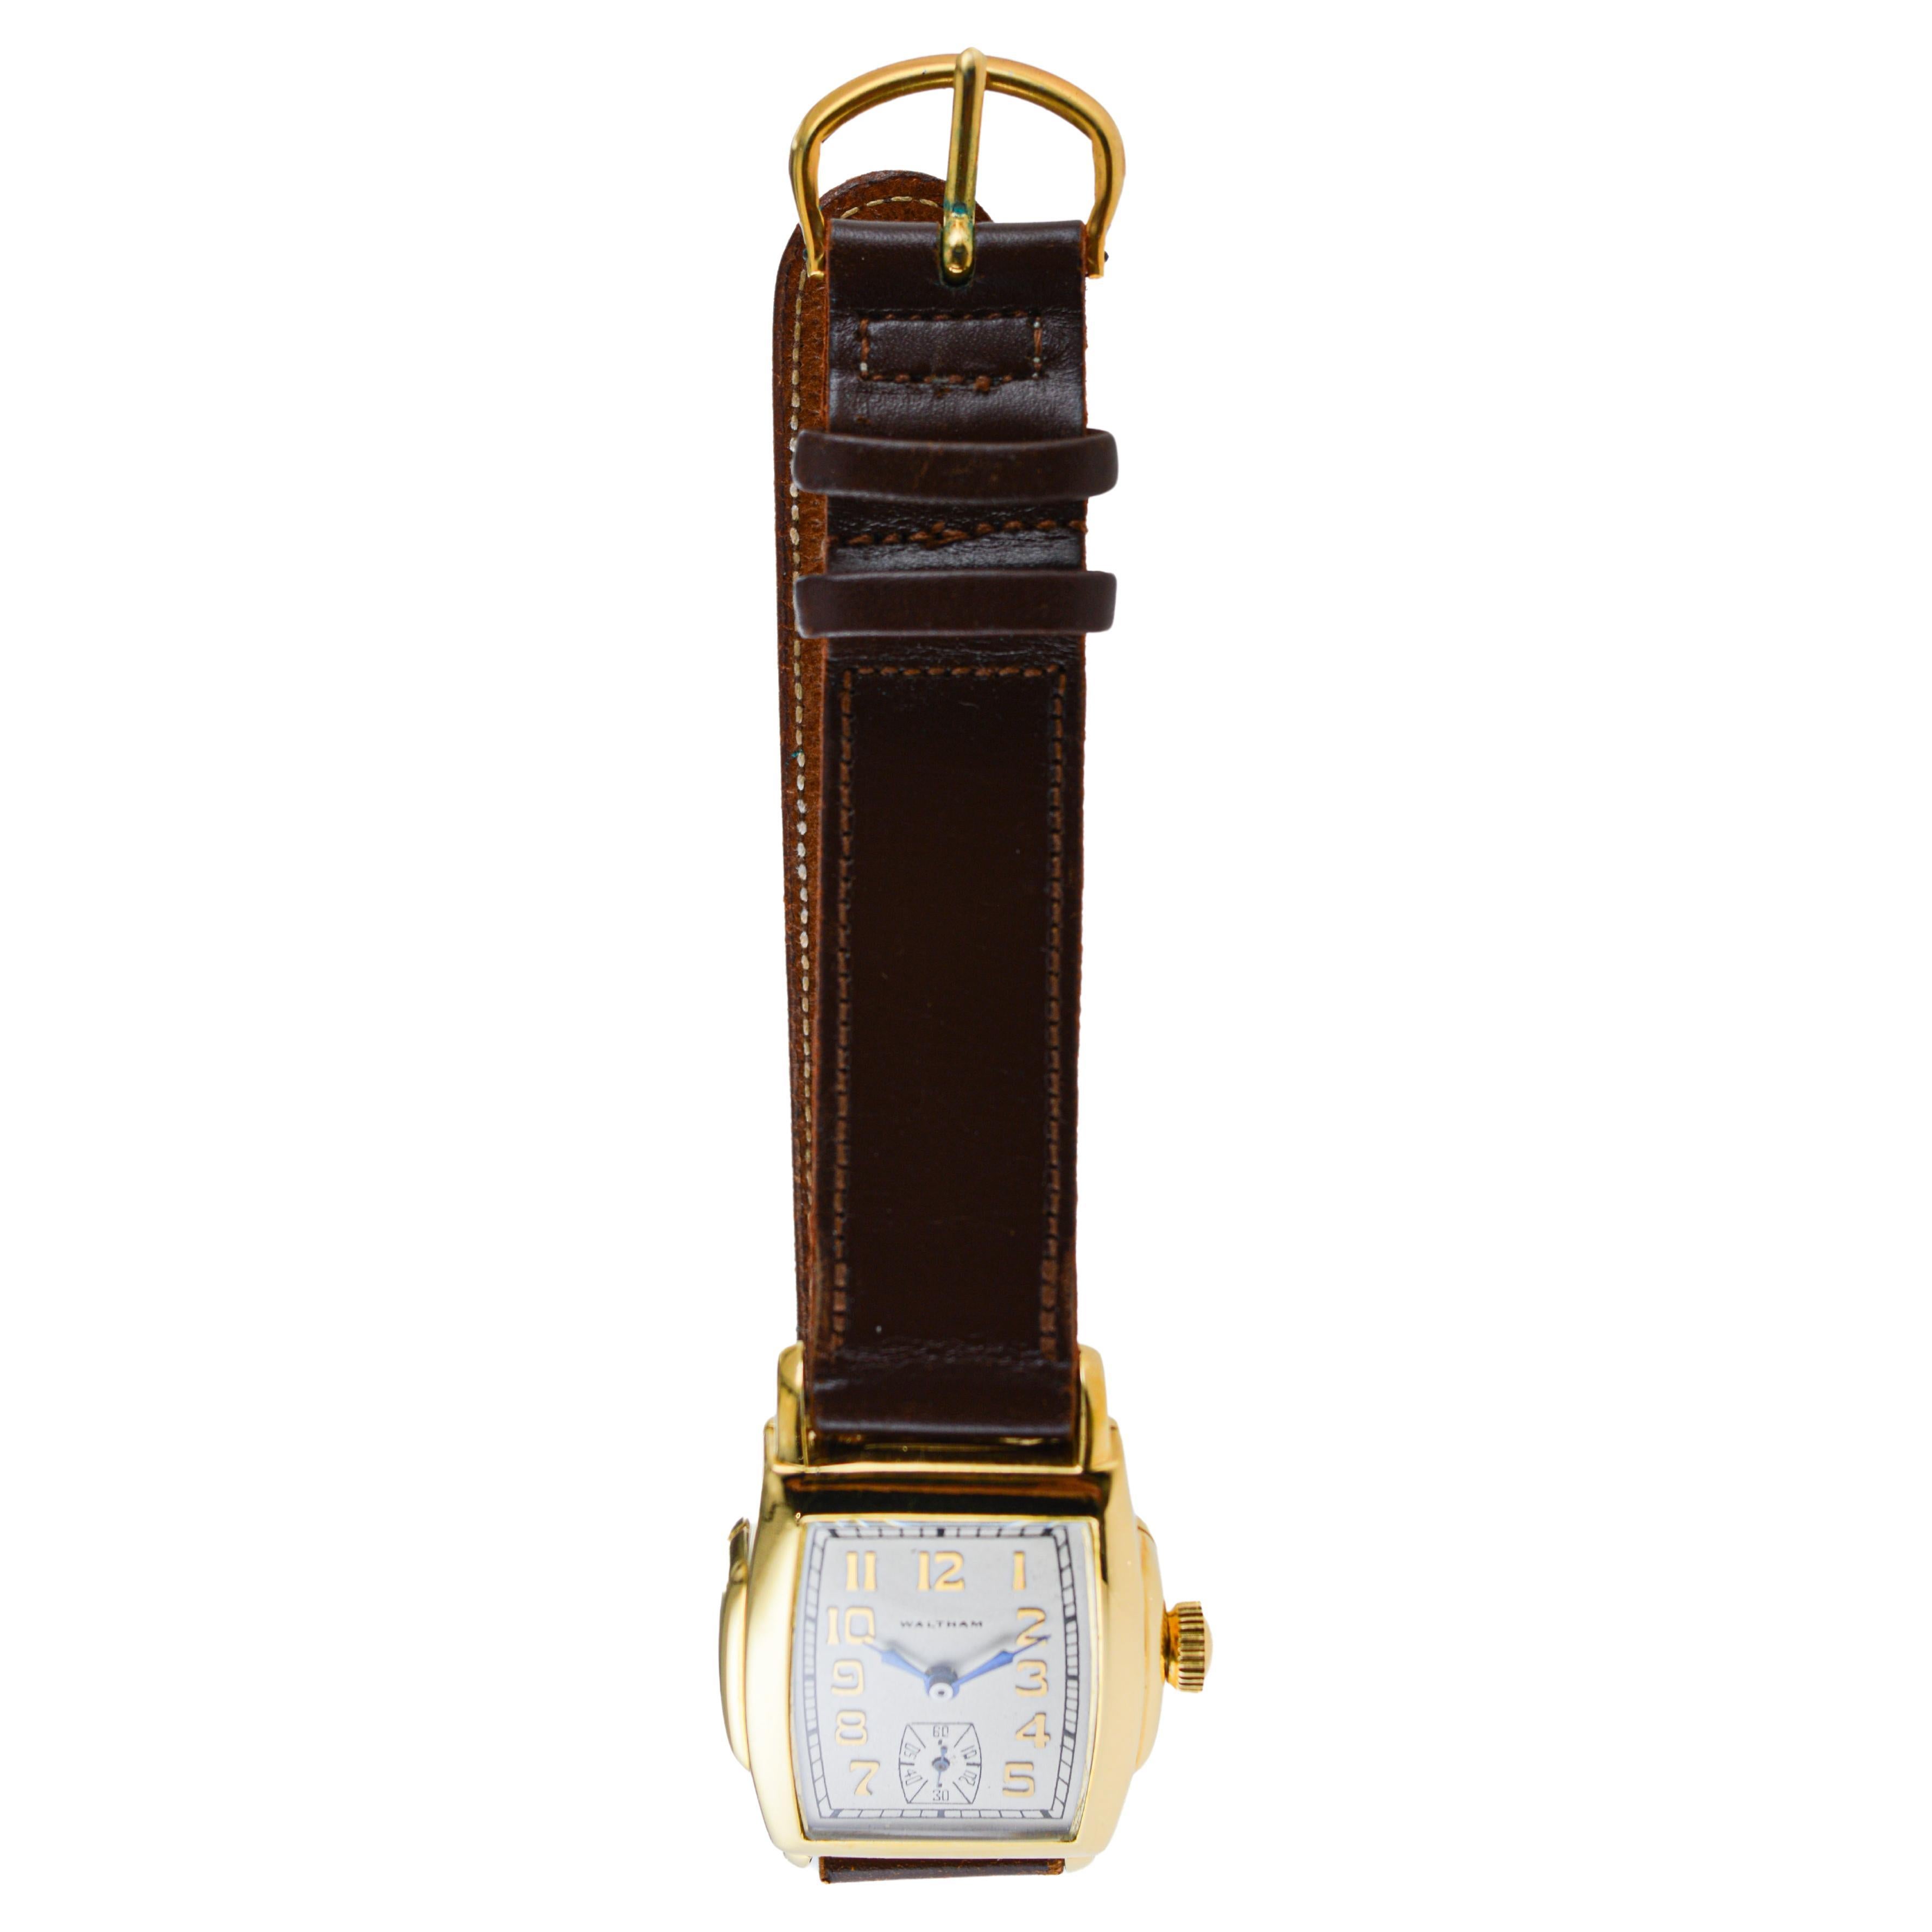 FABRIK / HAUS: Waltham Watch Company
STIL / REFERENZ: Art Deco / Tonneau Form 
METALL / MATERIAL: Gelbgold gefüllt
CIRCA / JAHR: 1920er Jahre
ABMESSUNGEN / GRÖSSE: Länge 41mm X Breite 28mm
UHRWERK / KALIBER: Handaufzug / 21 Jewels / Kaliber Emerald